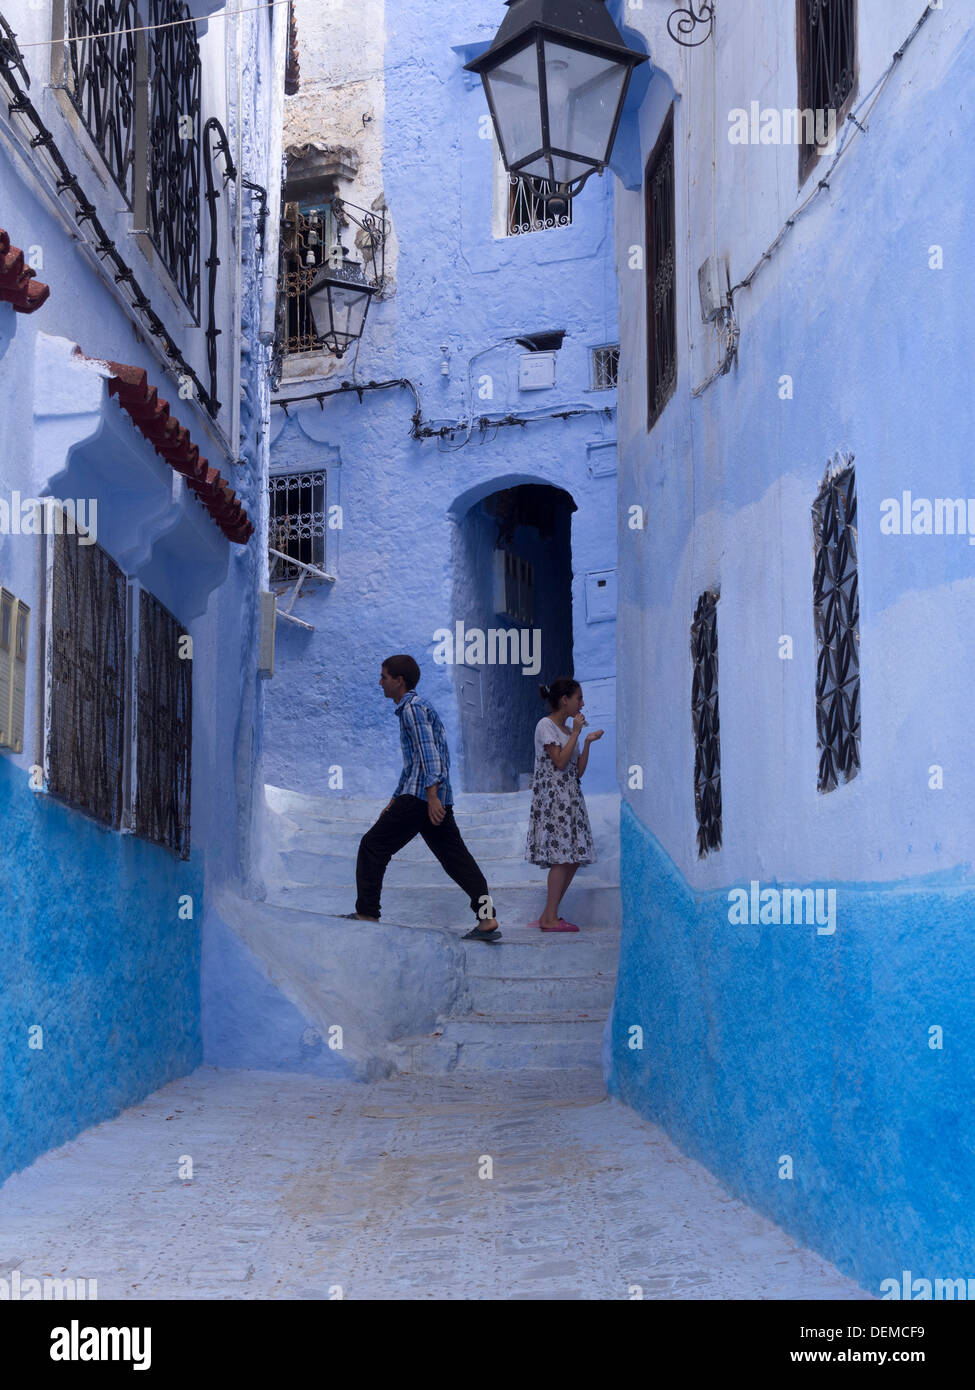 Deux jeunes enfants dans une ruelle avec ses maisons bleues à Chefchaouen, Maroc Banque D'Images